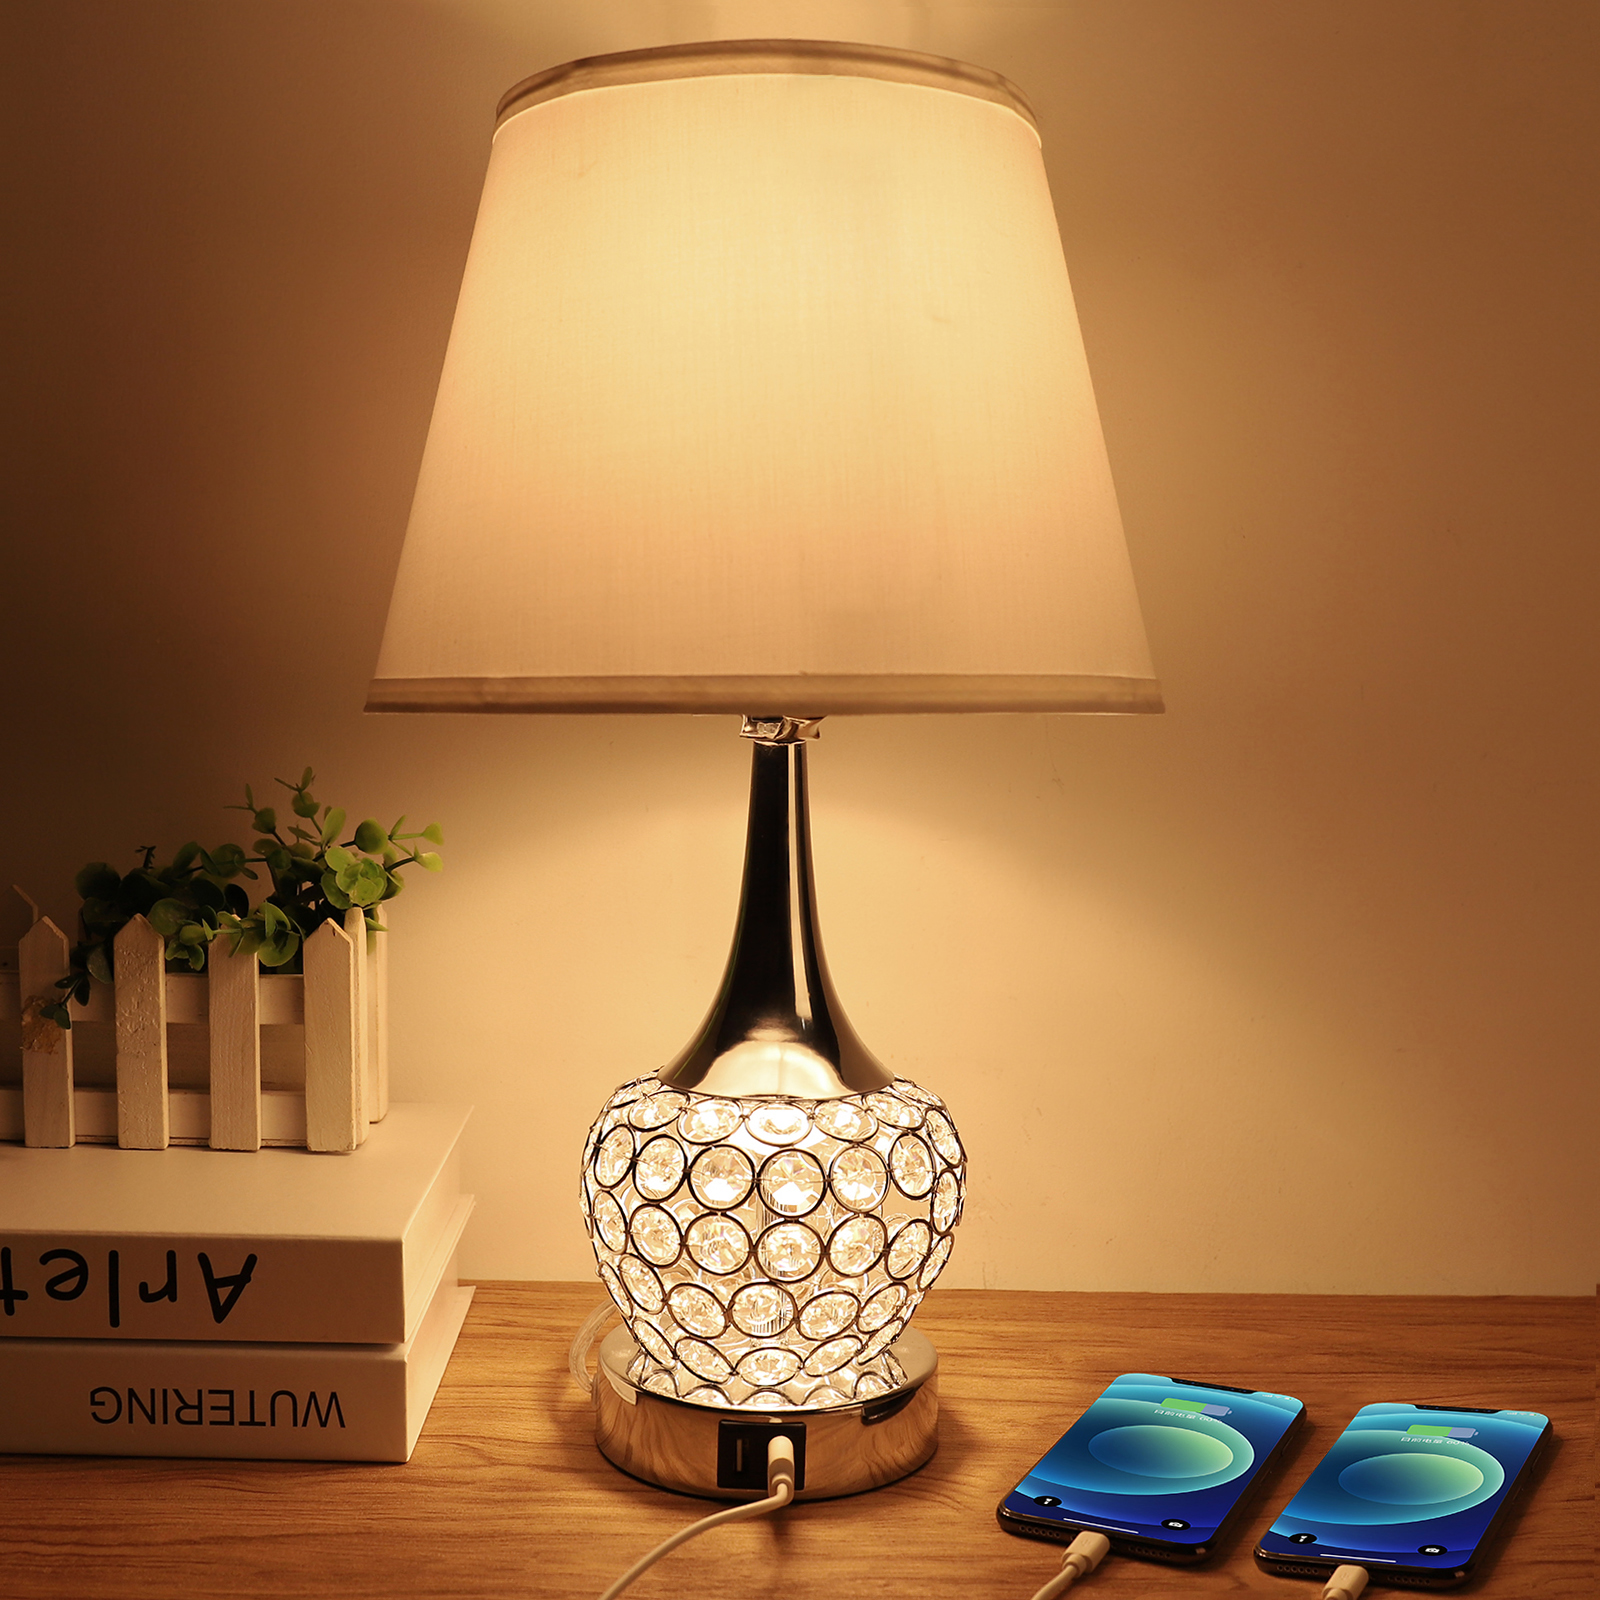 Kristall Tischlampe, Nachttischlampe mit zwei USB-Anschlüssen, Moderne Tischlampe 4 Wegschalter dekorativ für Schlafzimmer, Wohnzimmer, Umkleideraum, A19 6W LED-Lampe enthalten